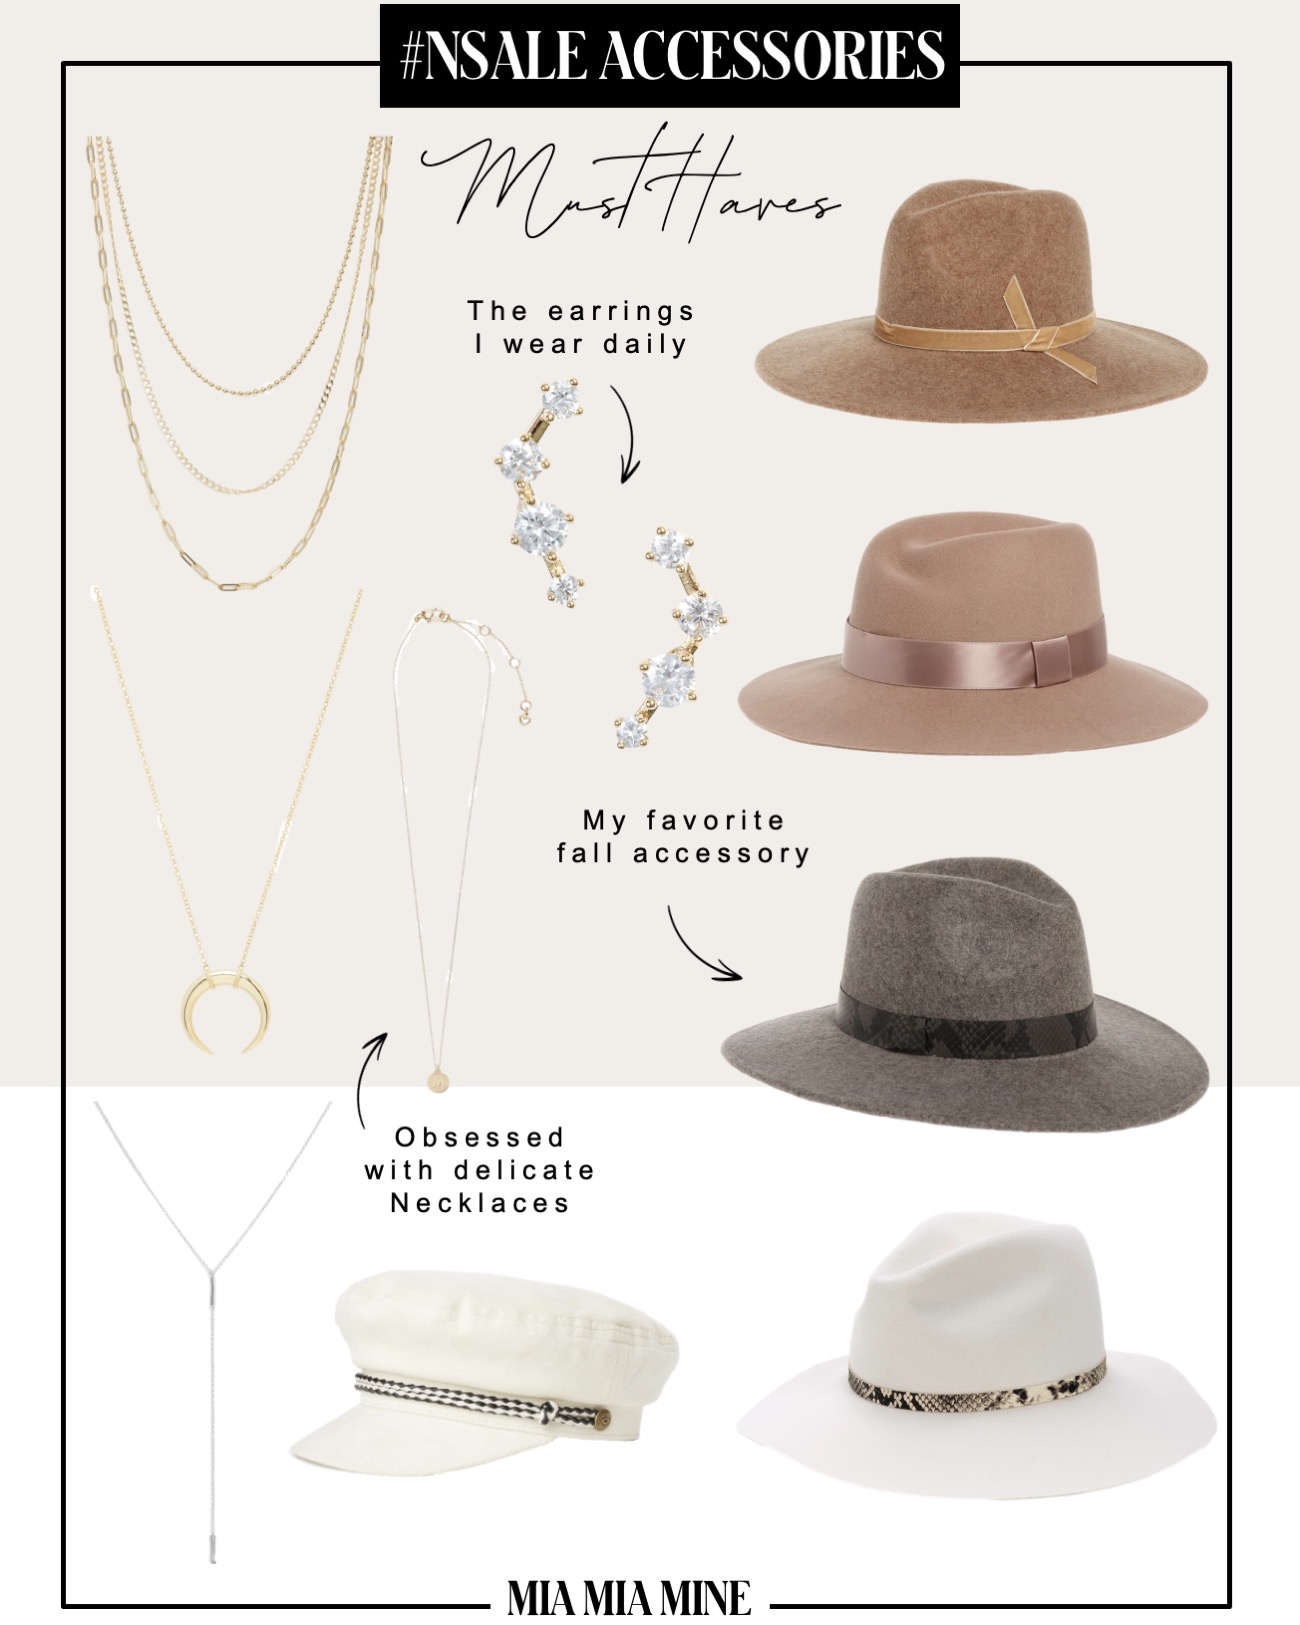 nordstrom anniversary sale 2020 accessories picks by fashion blogger miamiamine